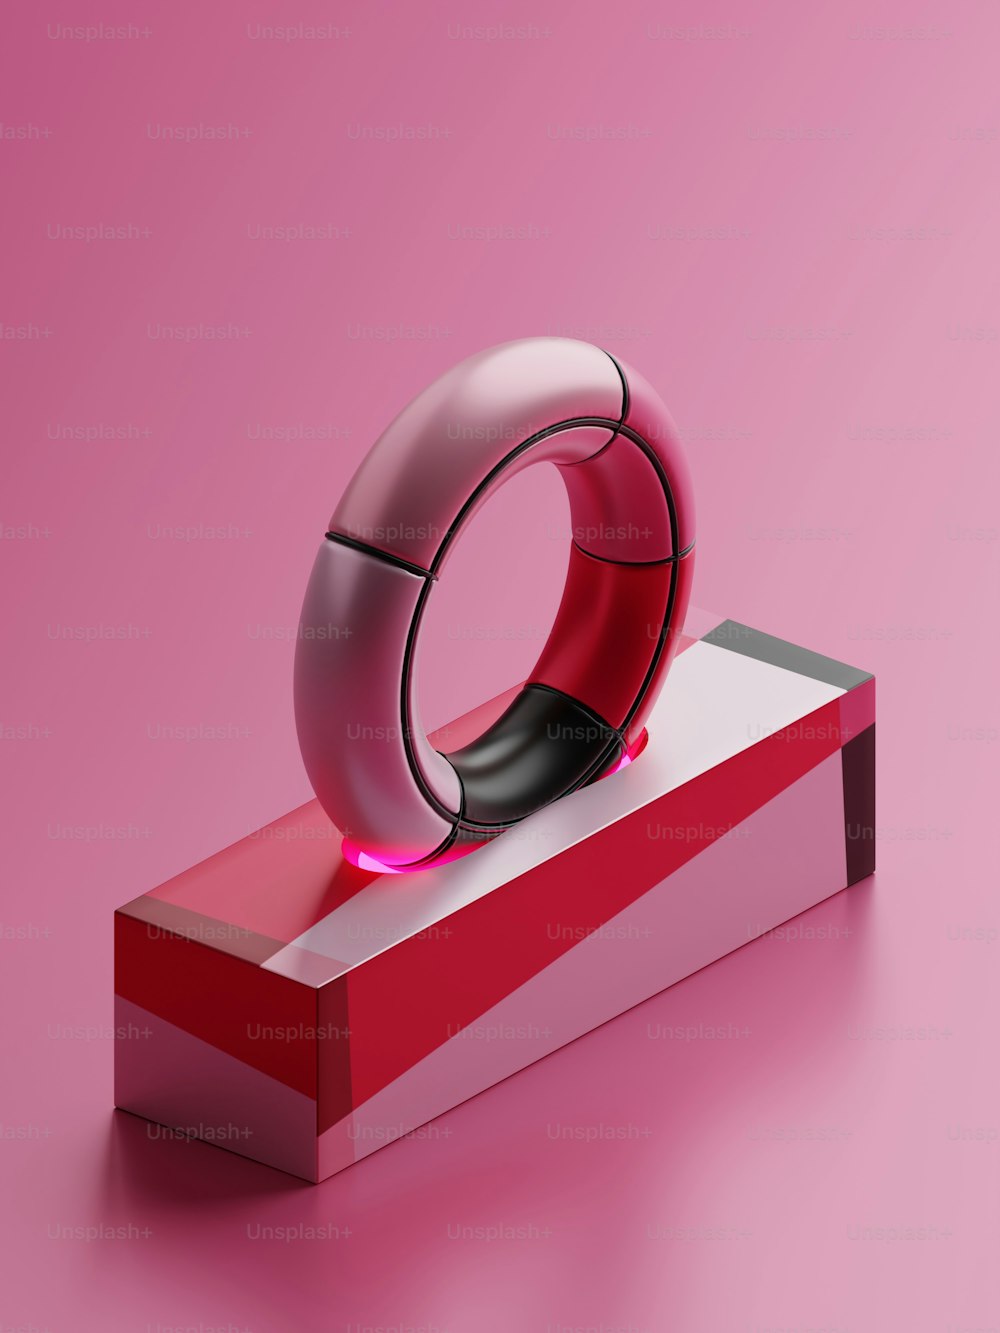 Un objeto rojo y blanco sobre una superficie rosada